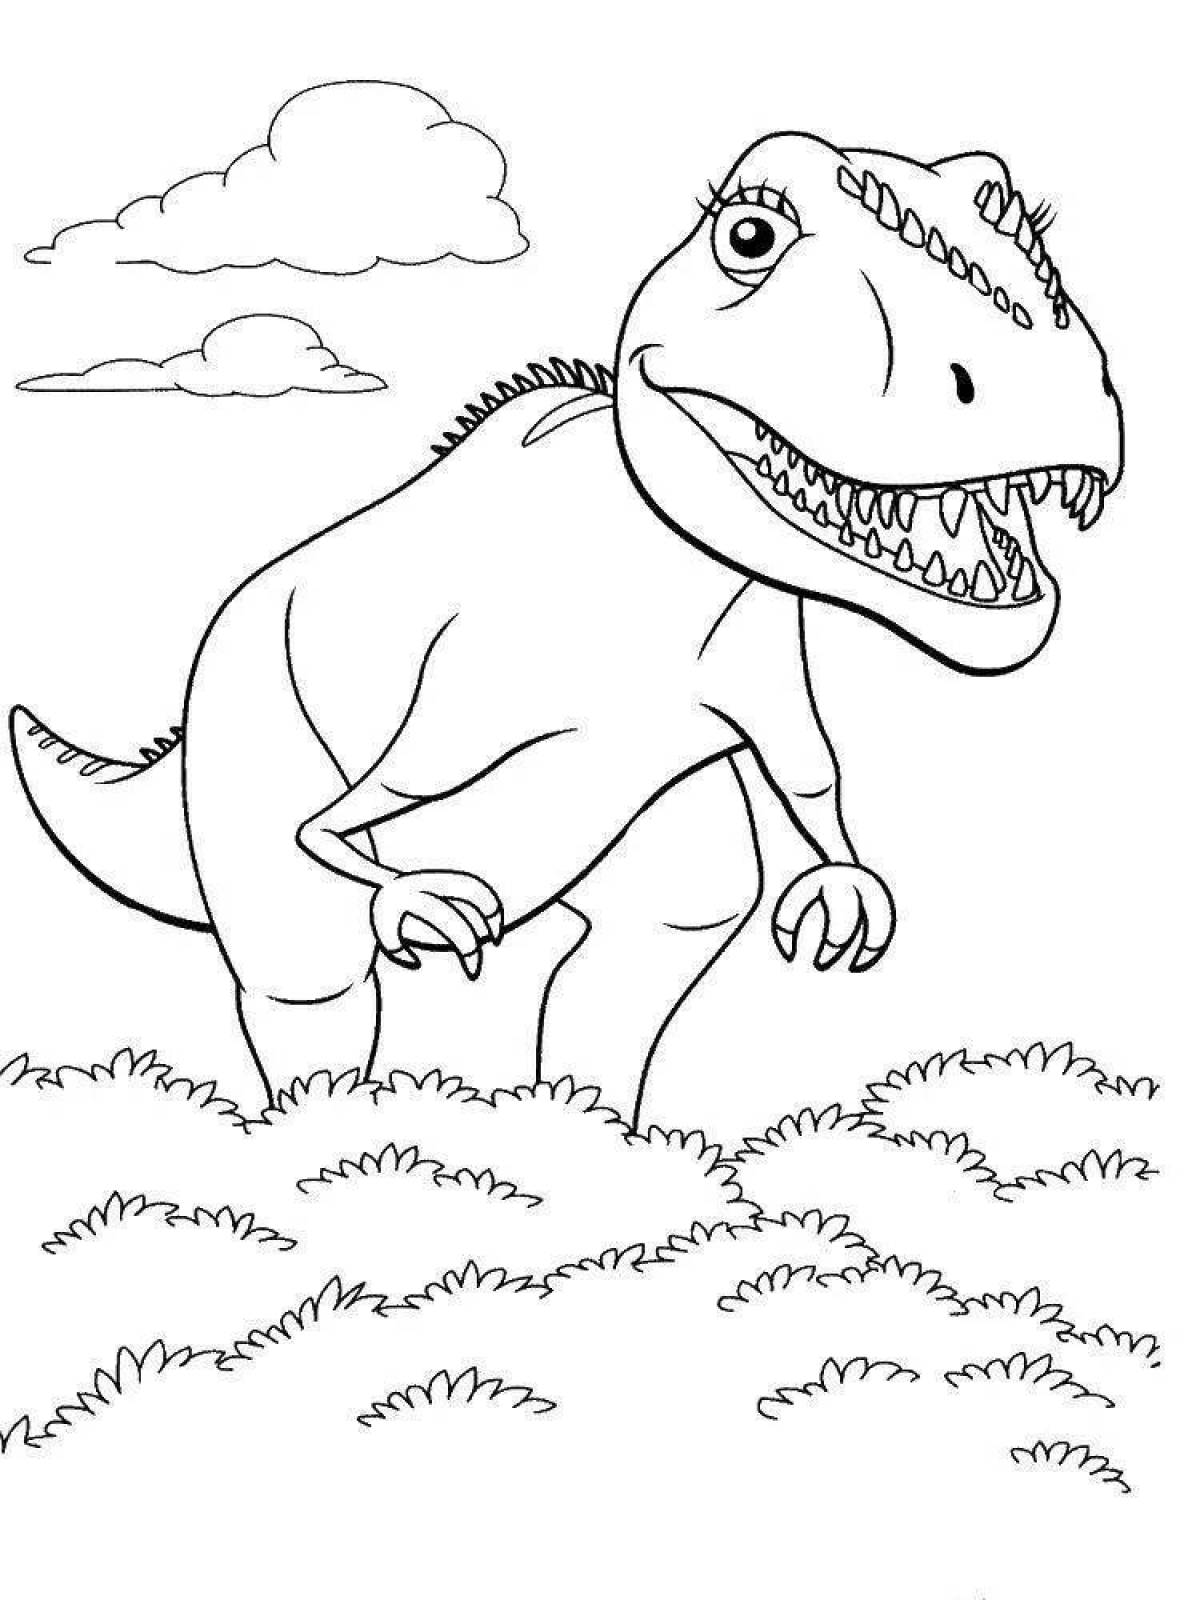 Раскраска динозавр формат а4. Поезд динозавров Тираннозавр раскраска. Тарбозавр раскраска динозавра. Динозавры / раскраска. Динозавр раскраска для детей.